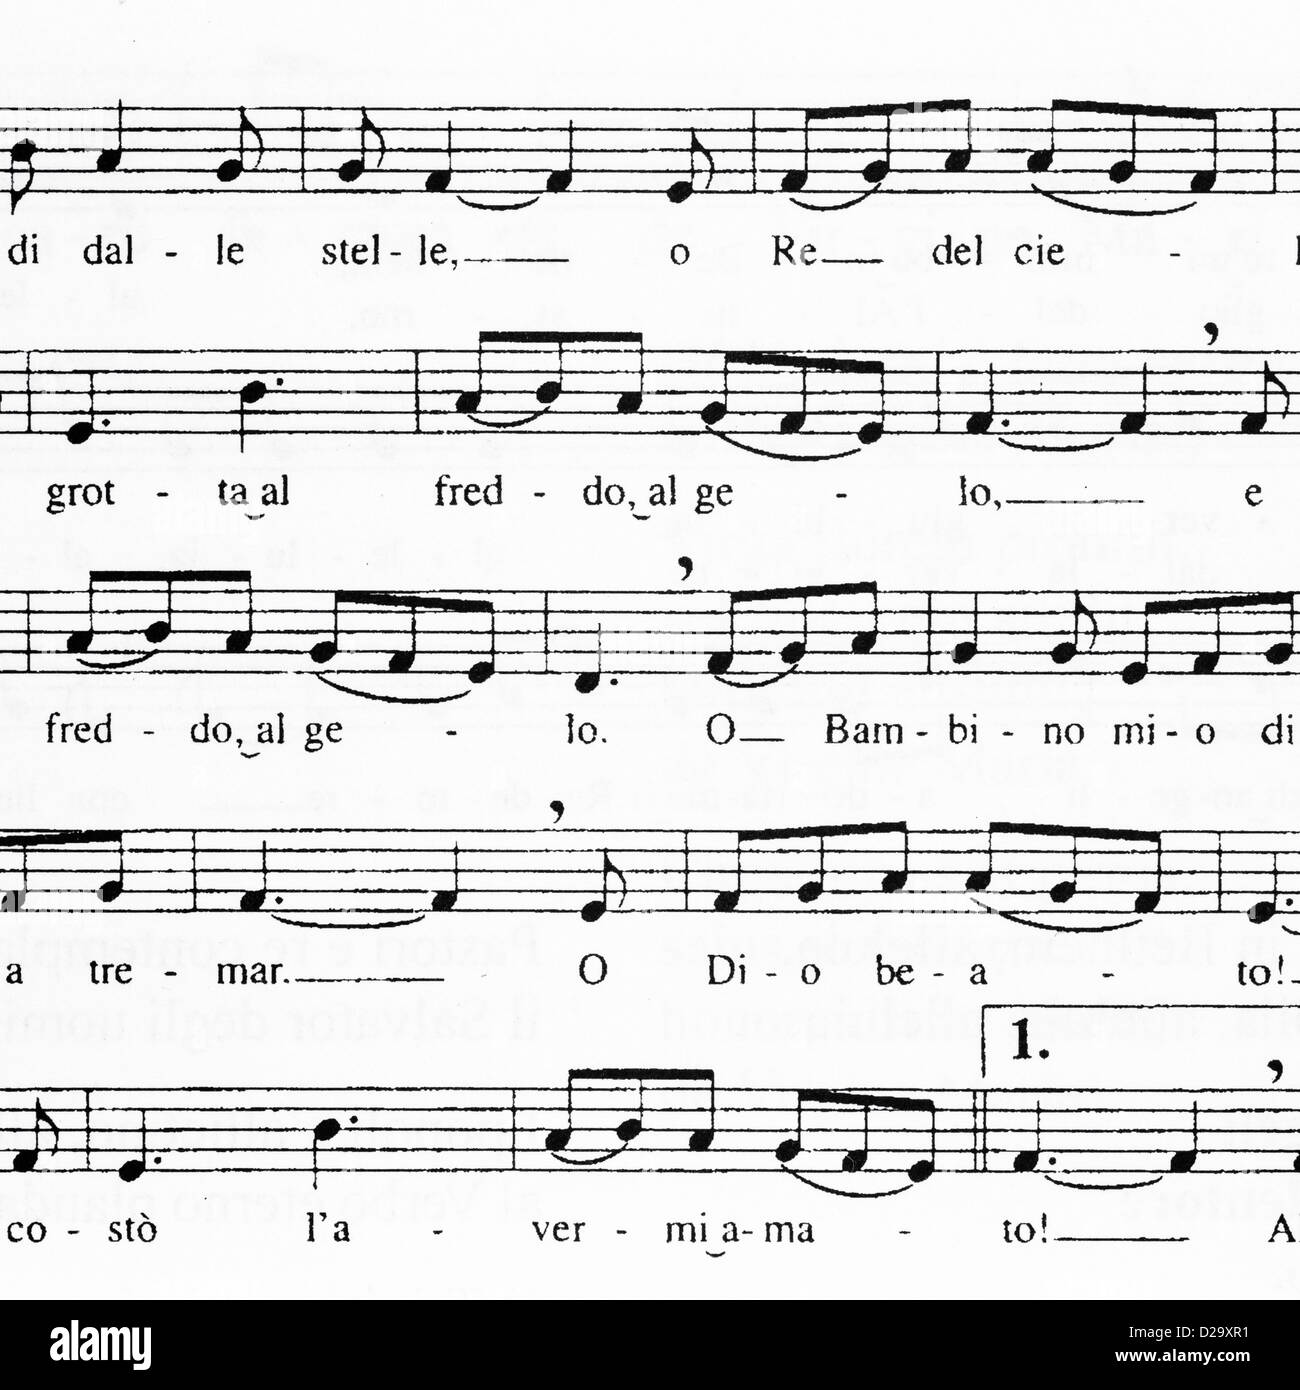 Libre de la musique en feuille avec des notes et des mots pour le chant de Noël traditionnel "Tu scendi dalle stelle" Banque D'Images